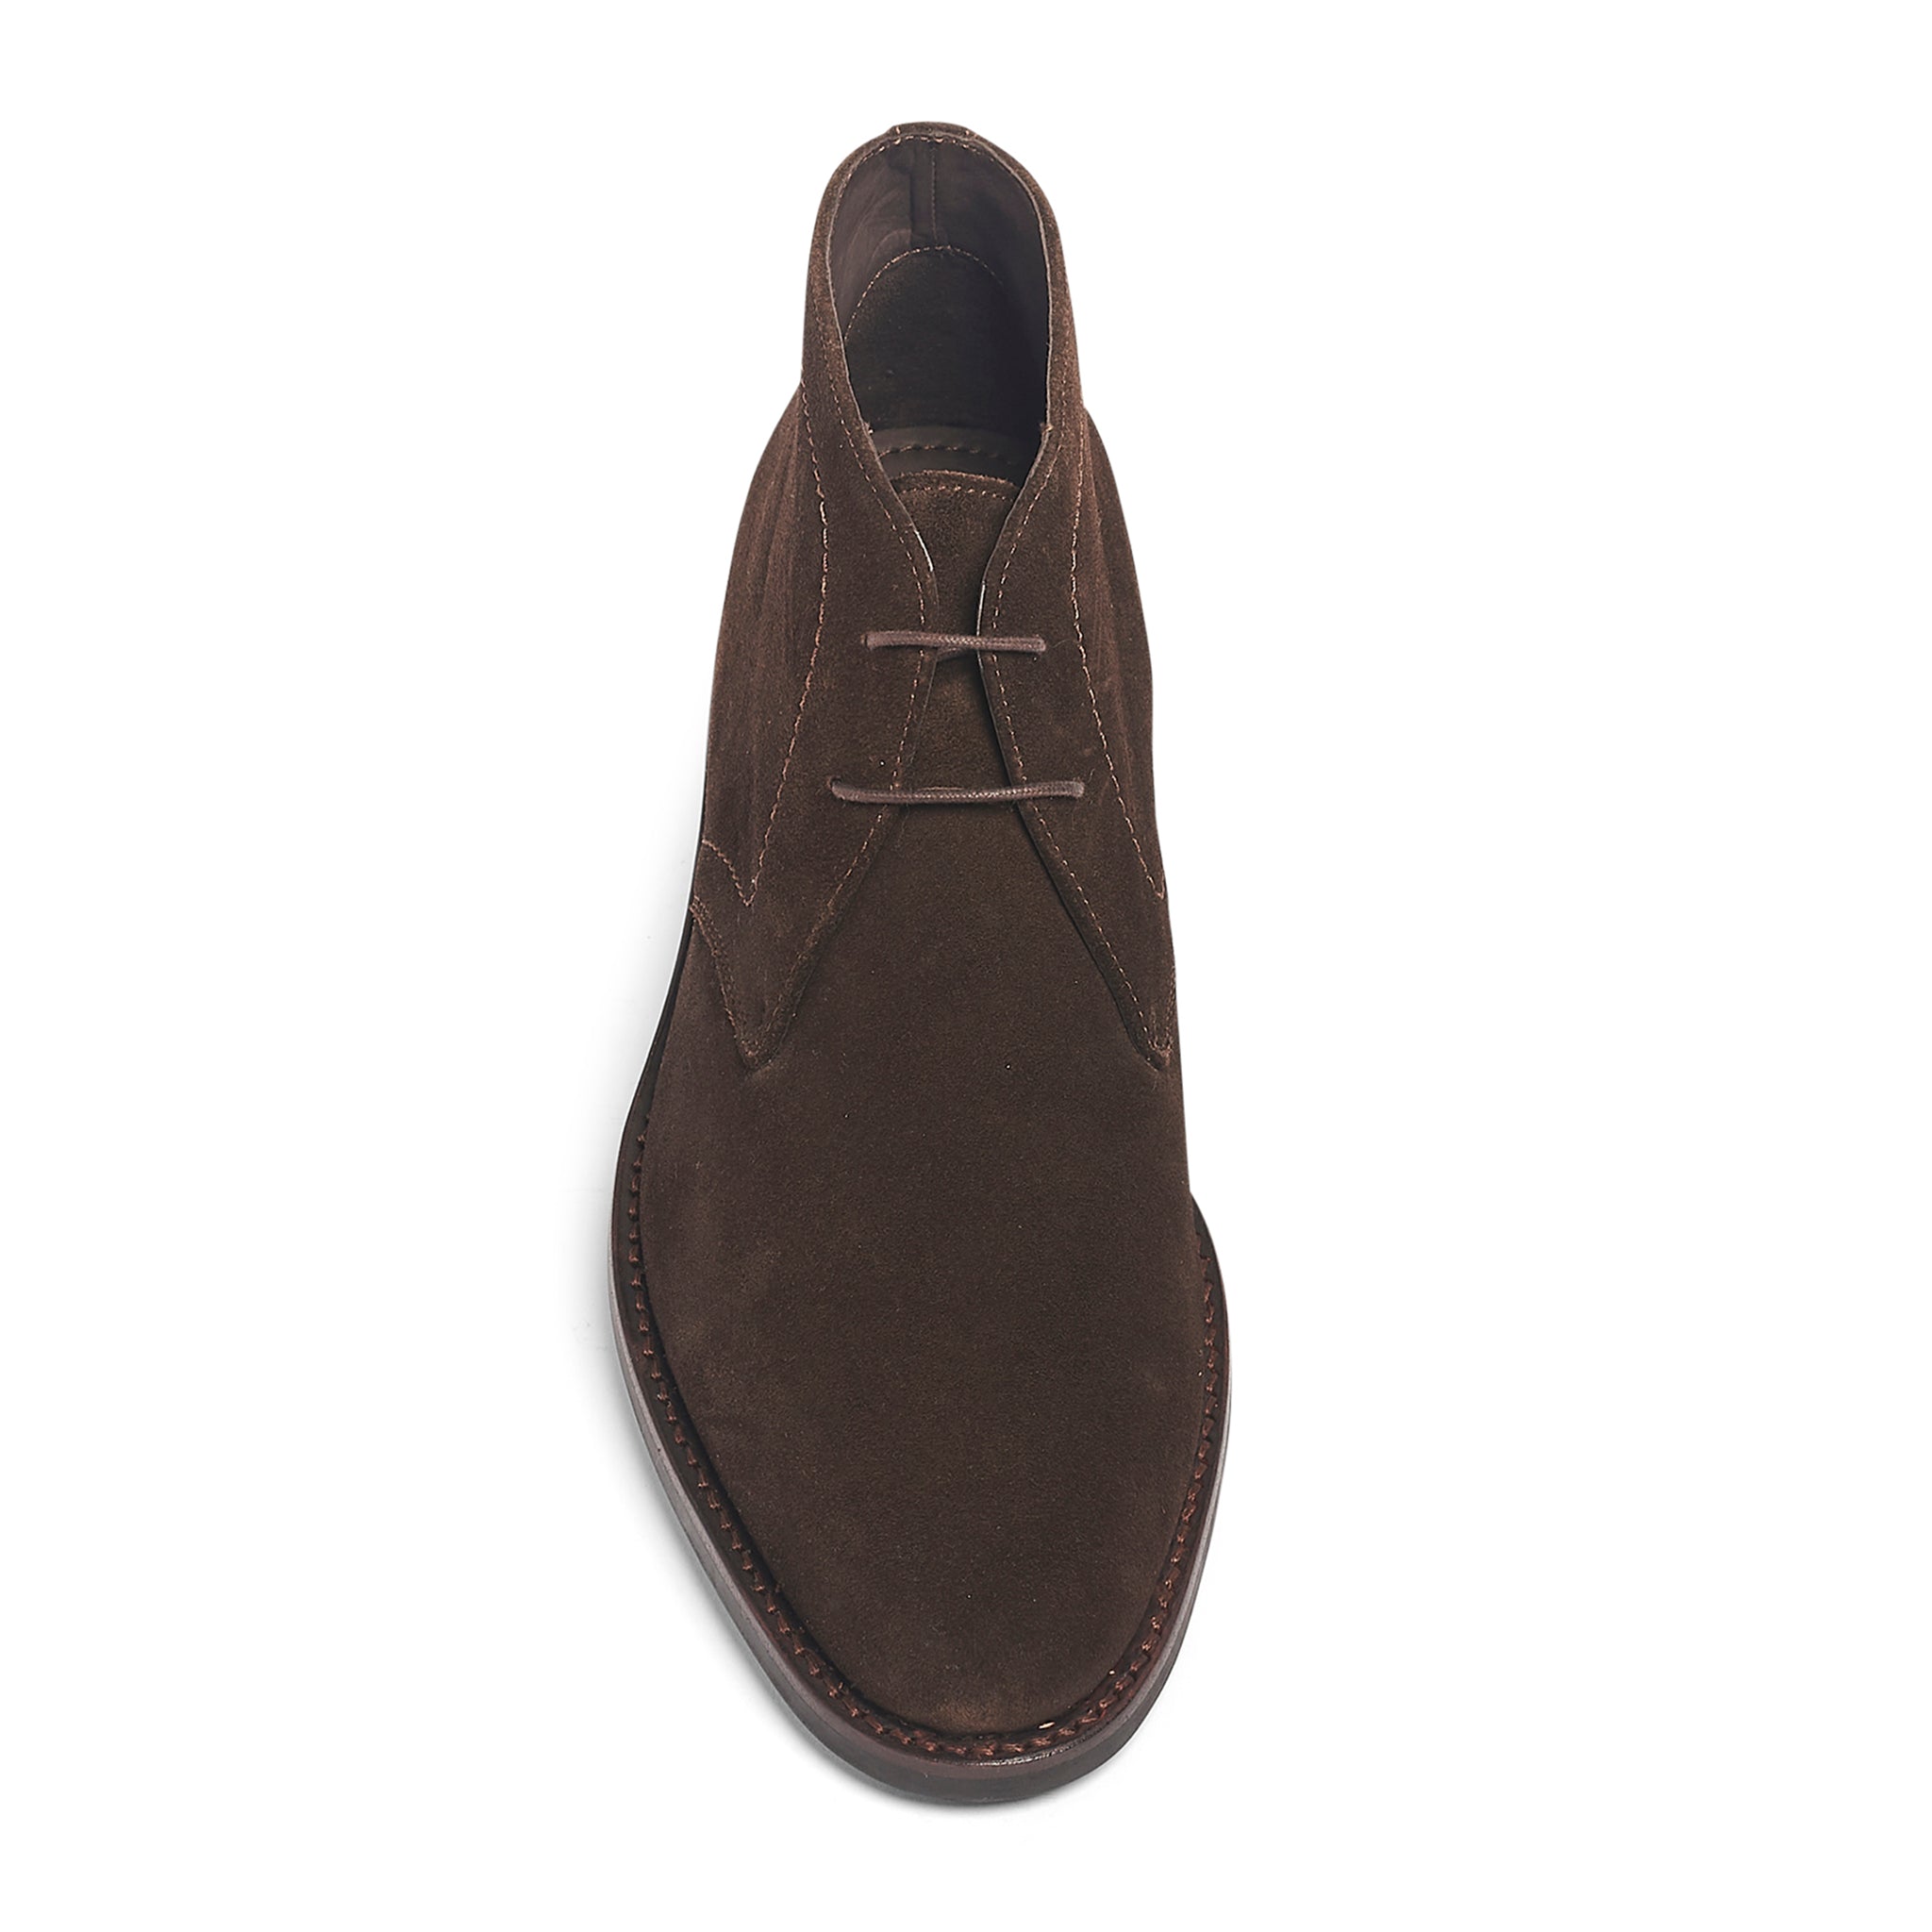 Wilson Chukka Boot, Suede | Men's Luxury Shoes Online | Full-Grain